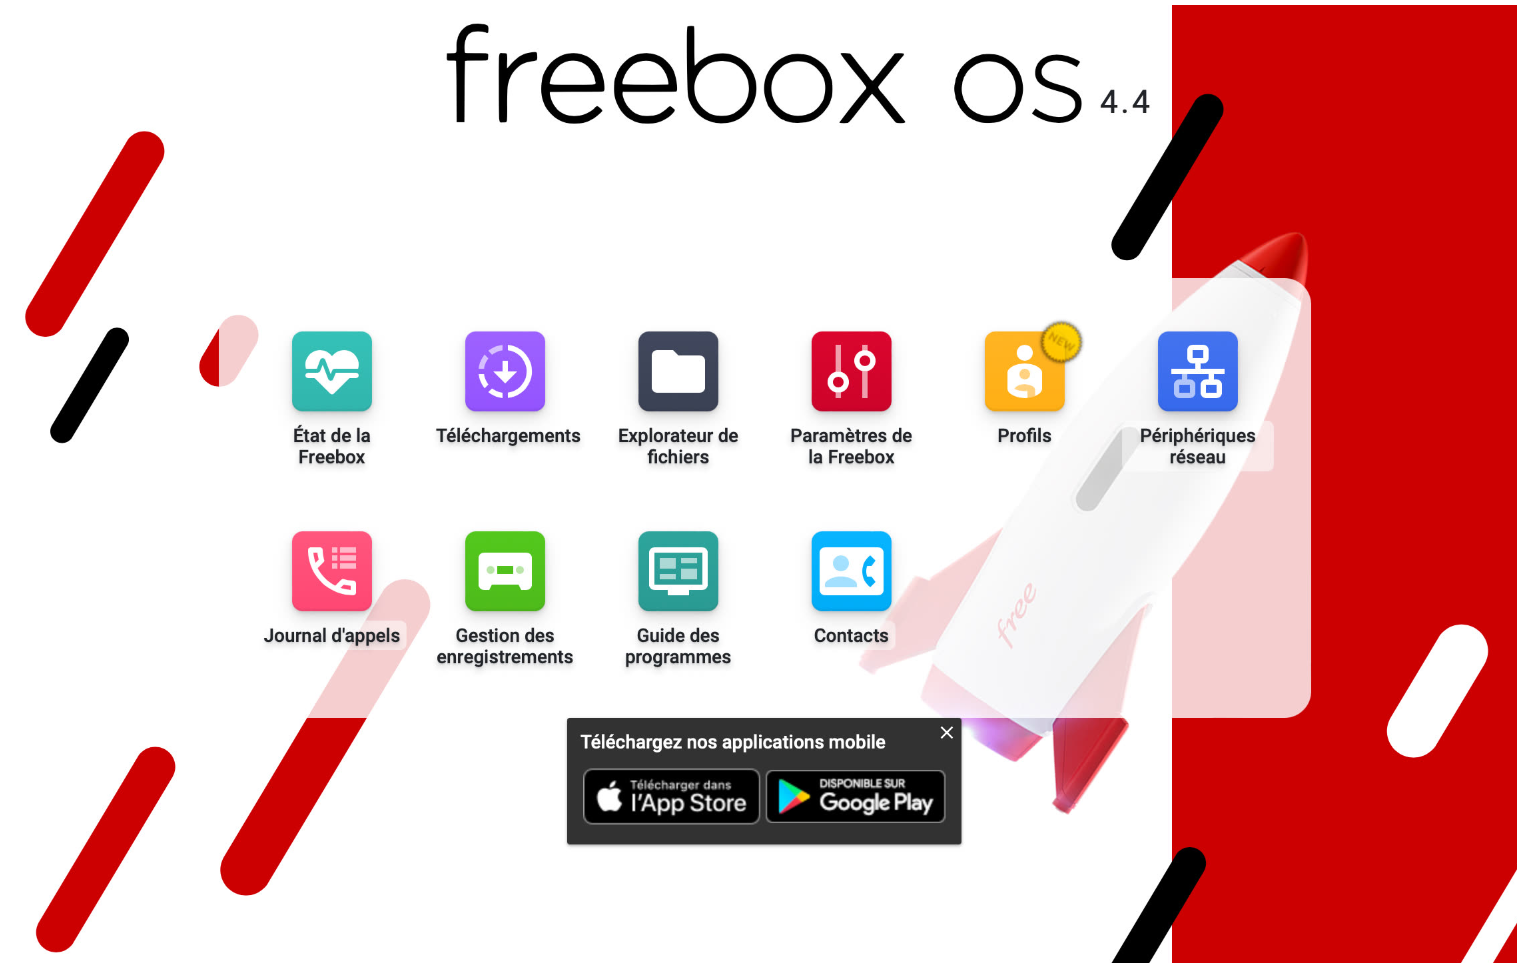 Freebox OS login to